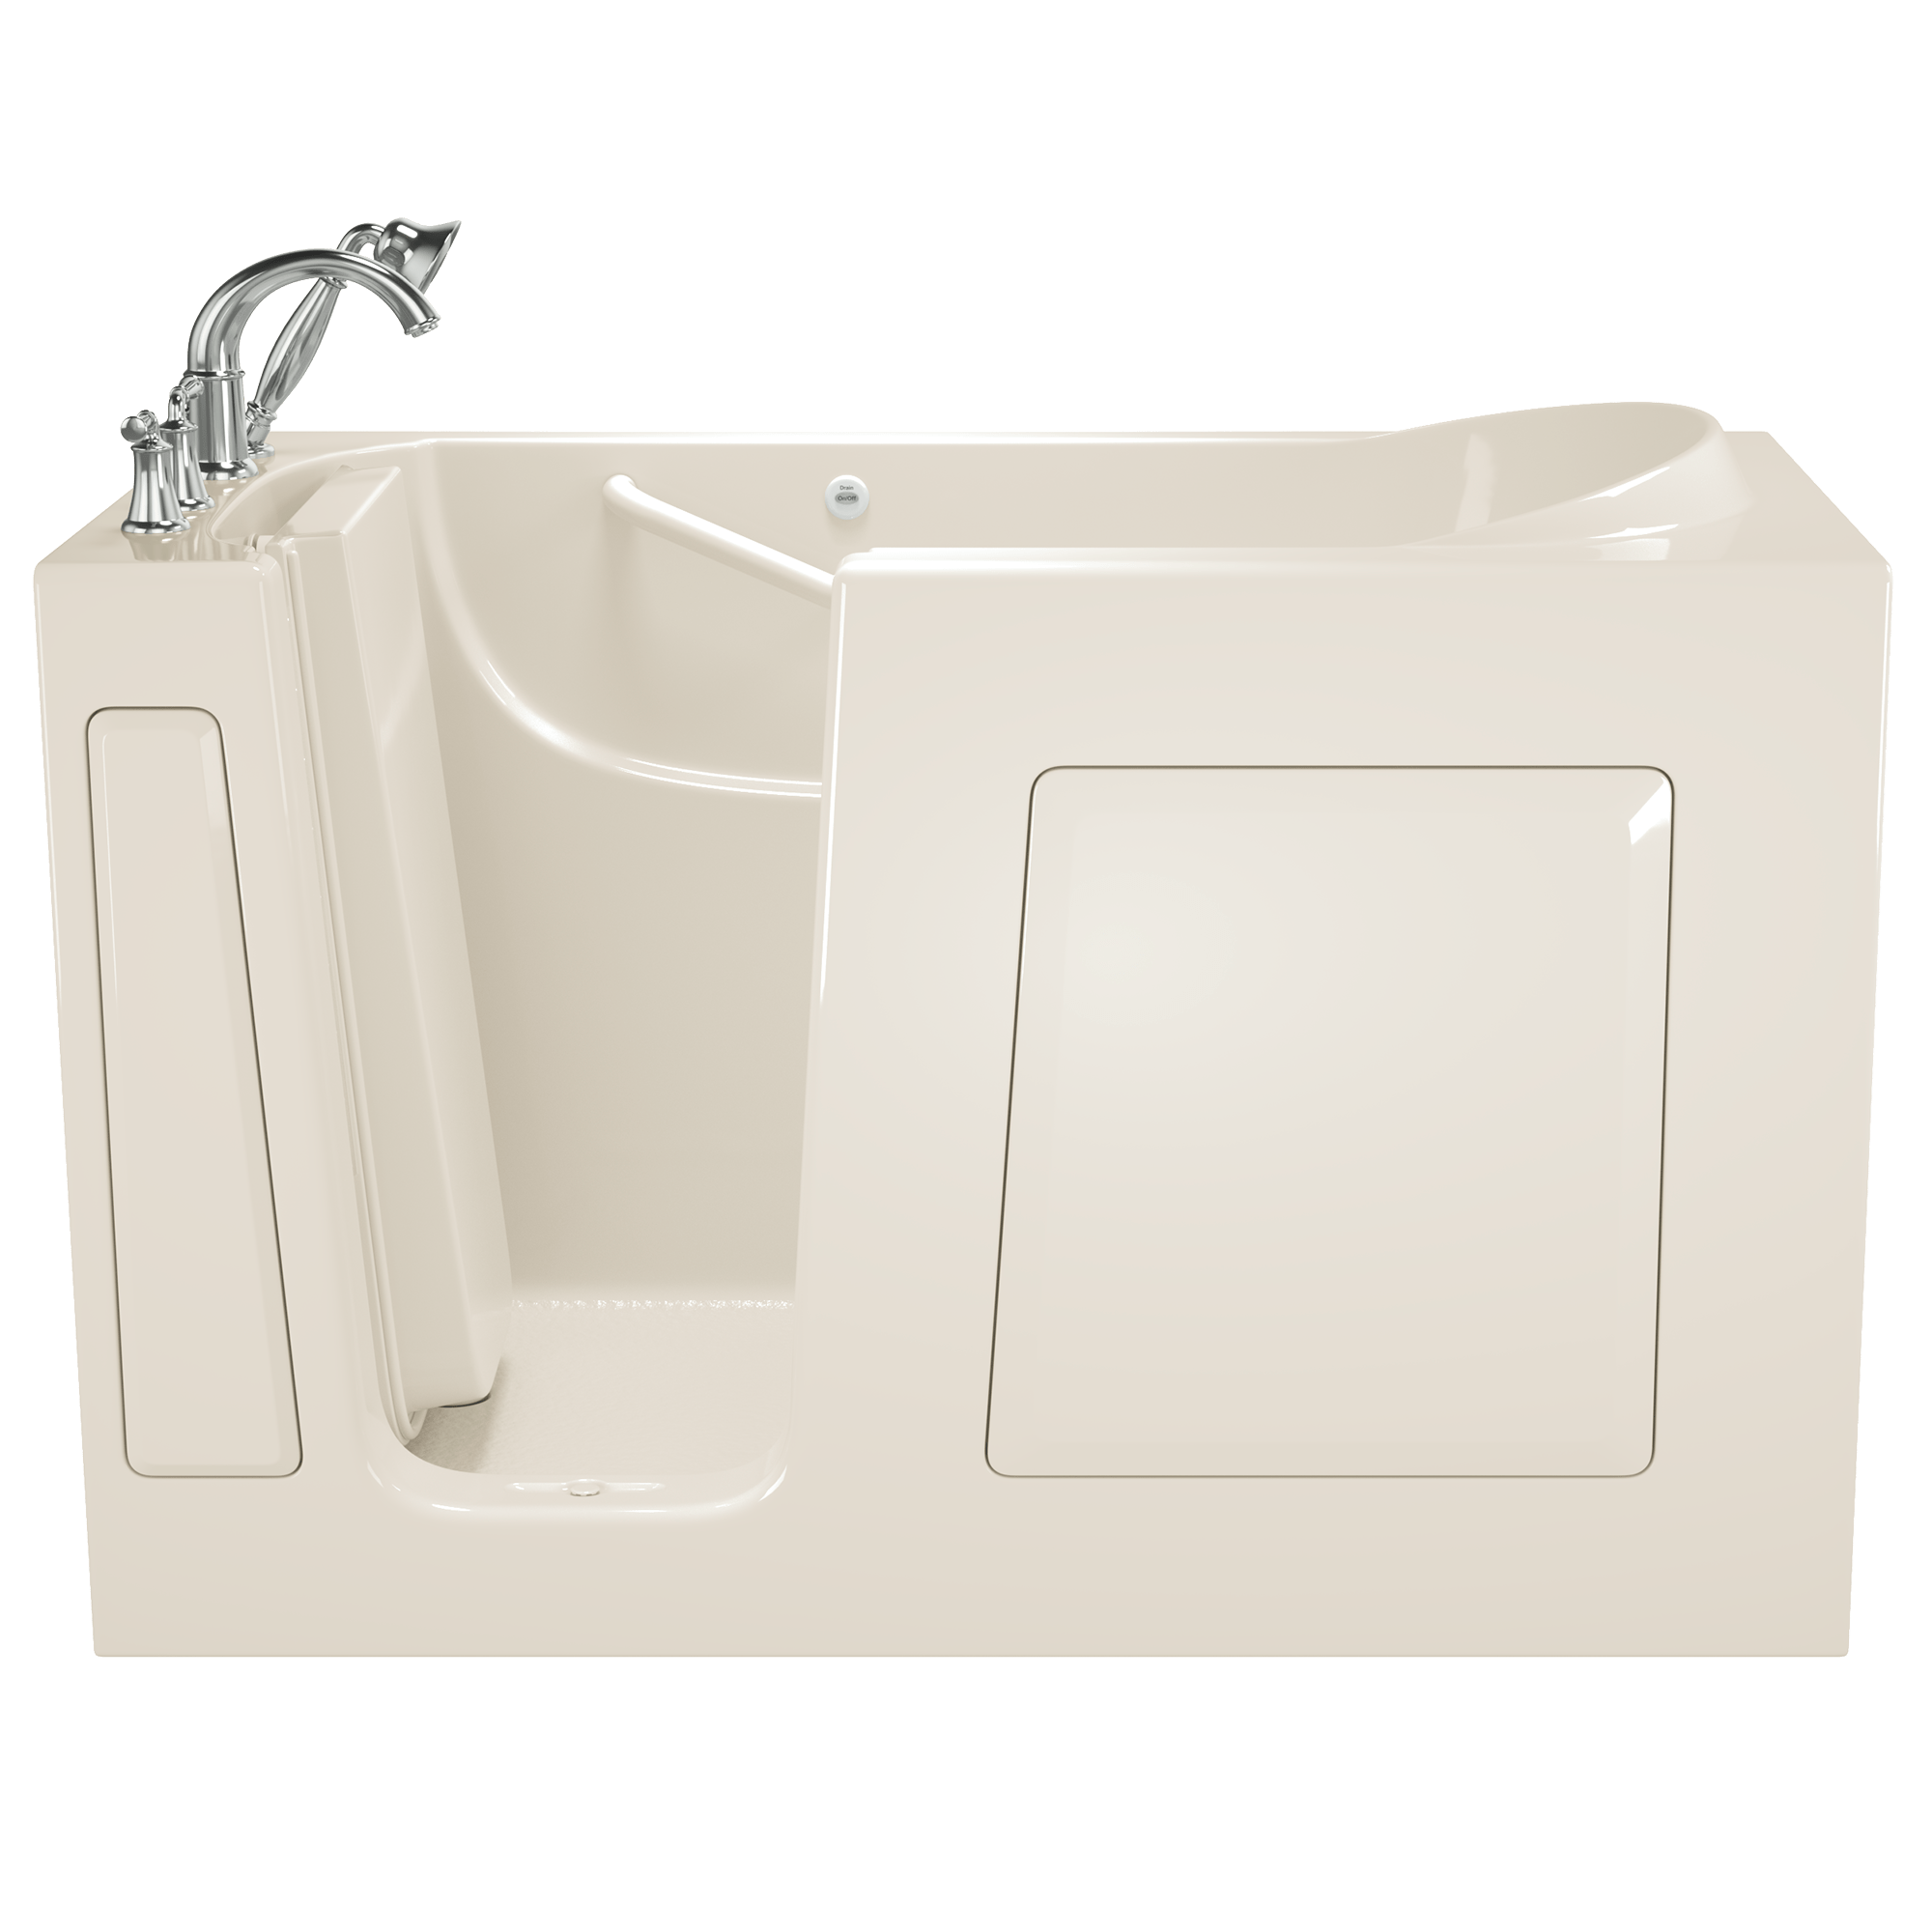 Gelcoat Value Series 30x60 Inch Soaking Walk-In Bathtub - Left Hand Door and Drain